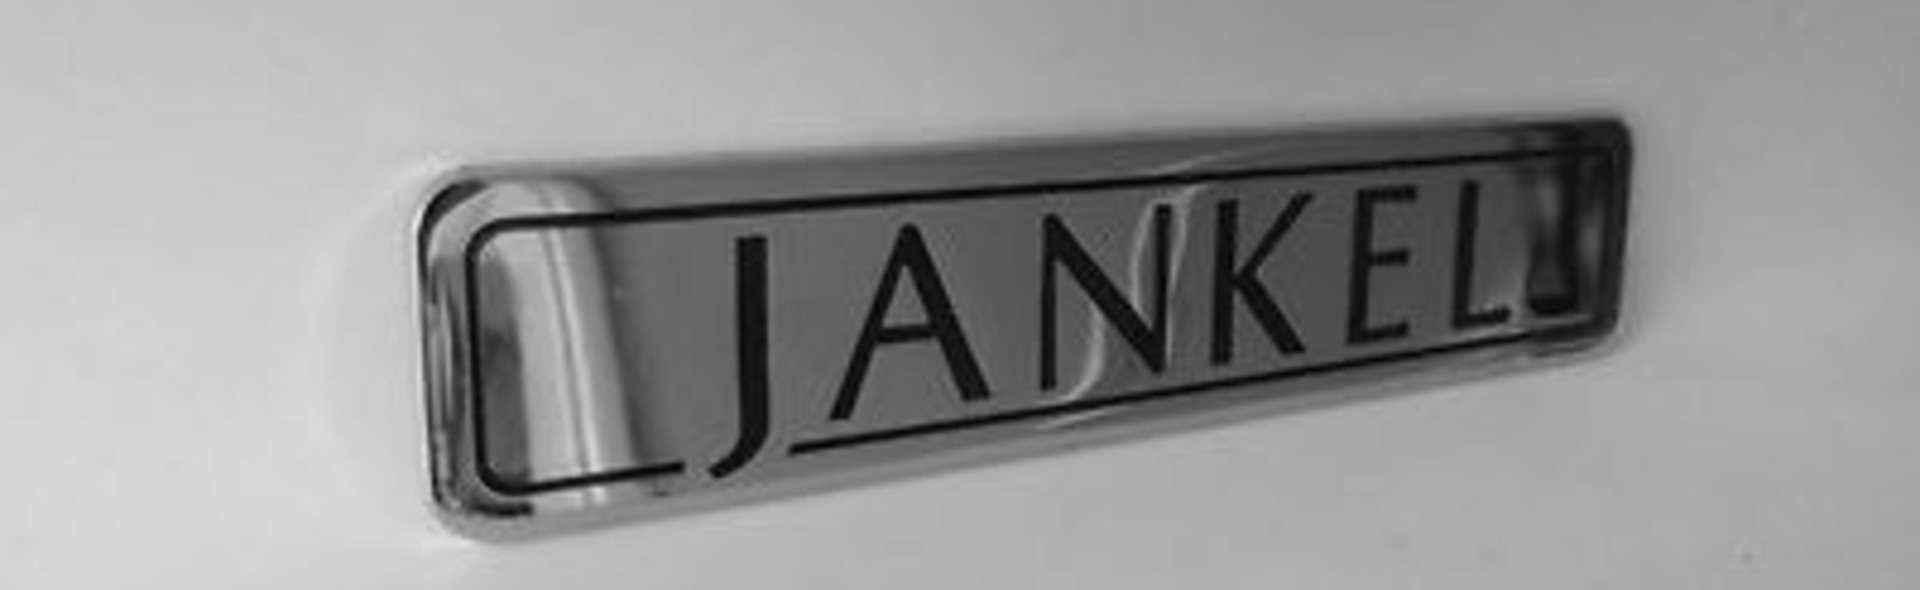 Banner Jankel